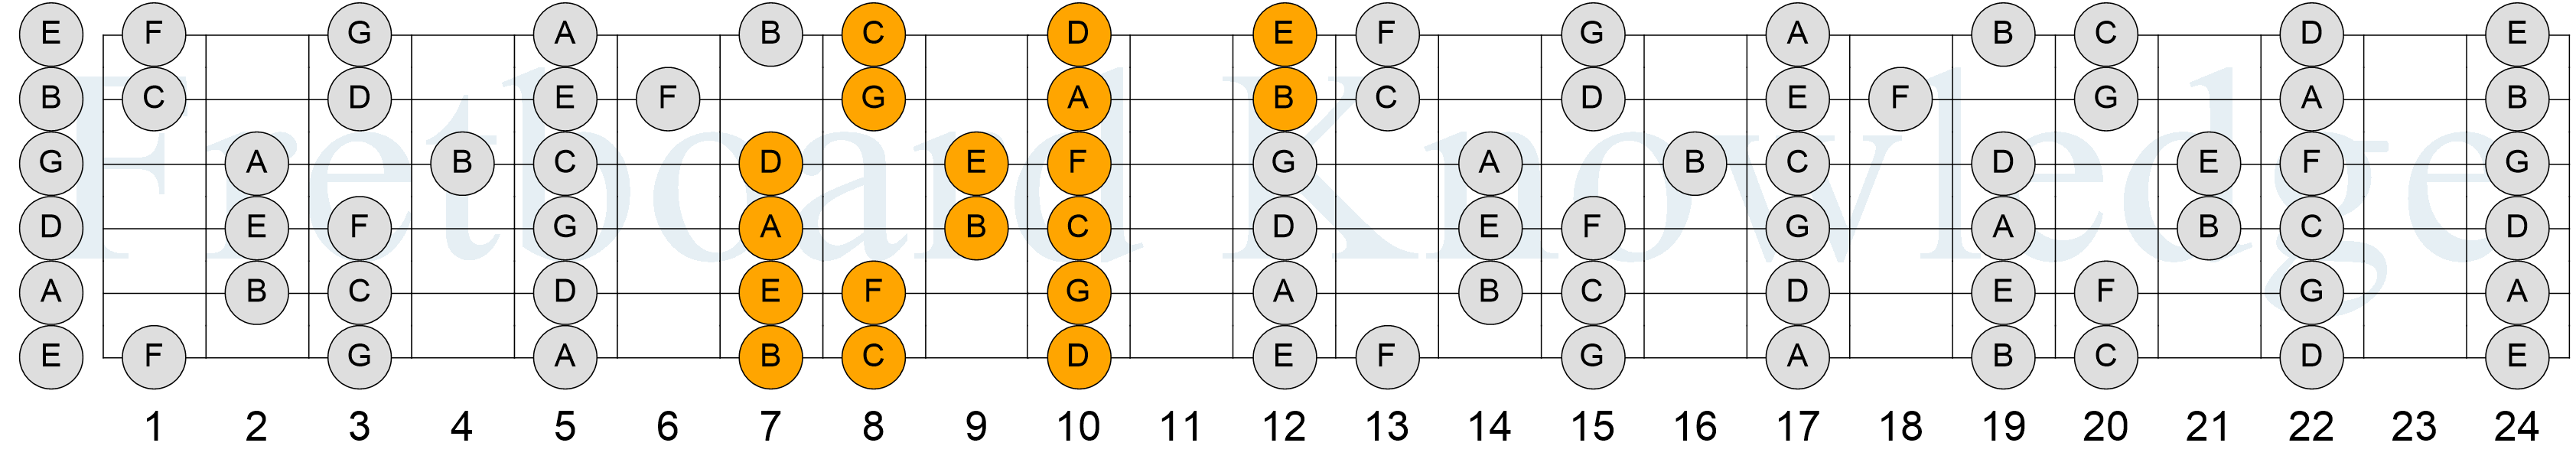 C Major Scale - 3NPS - Pattern 5